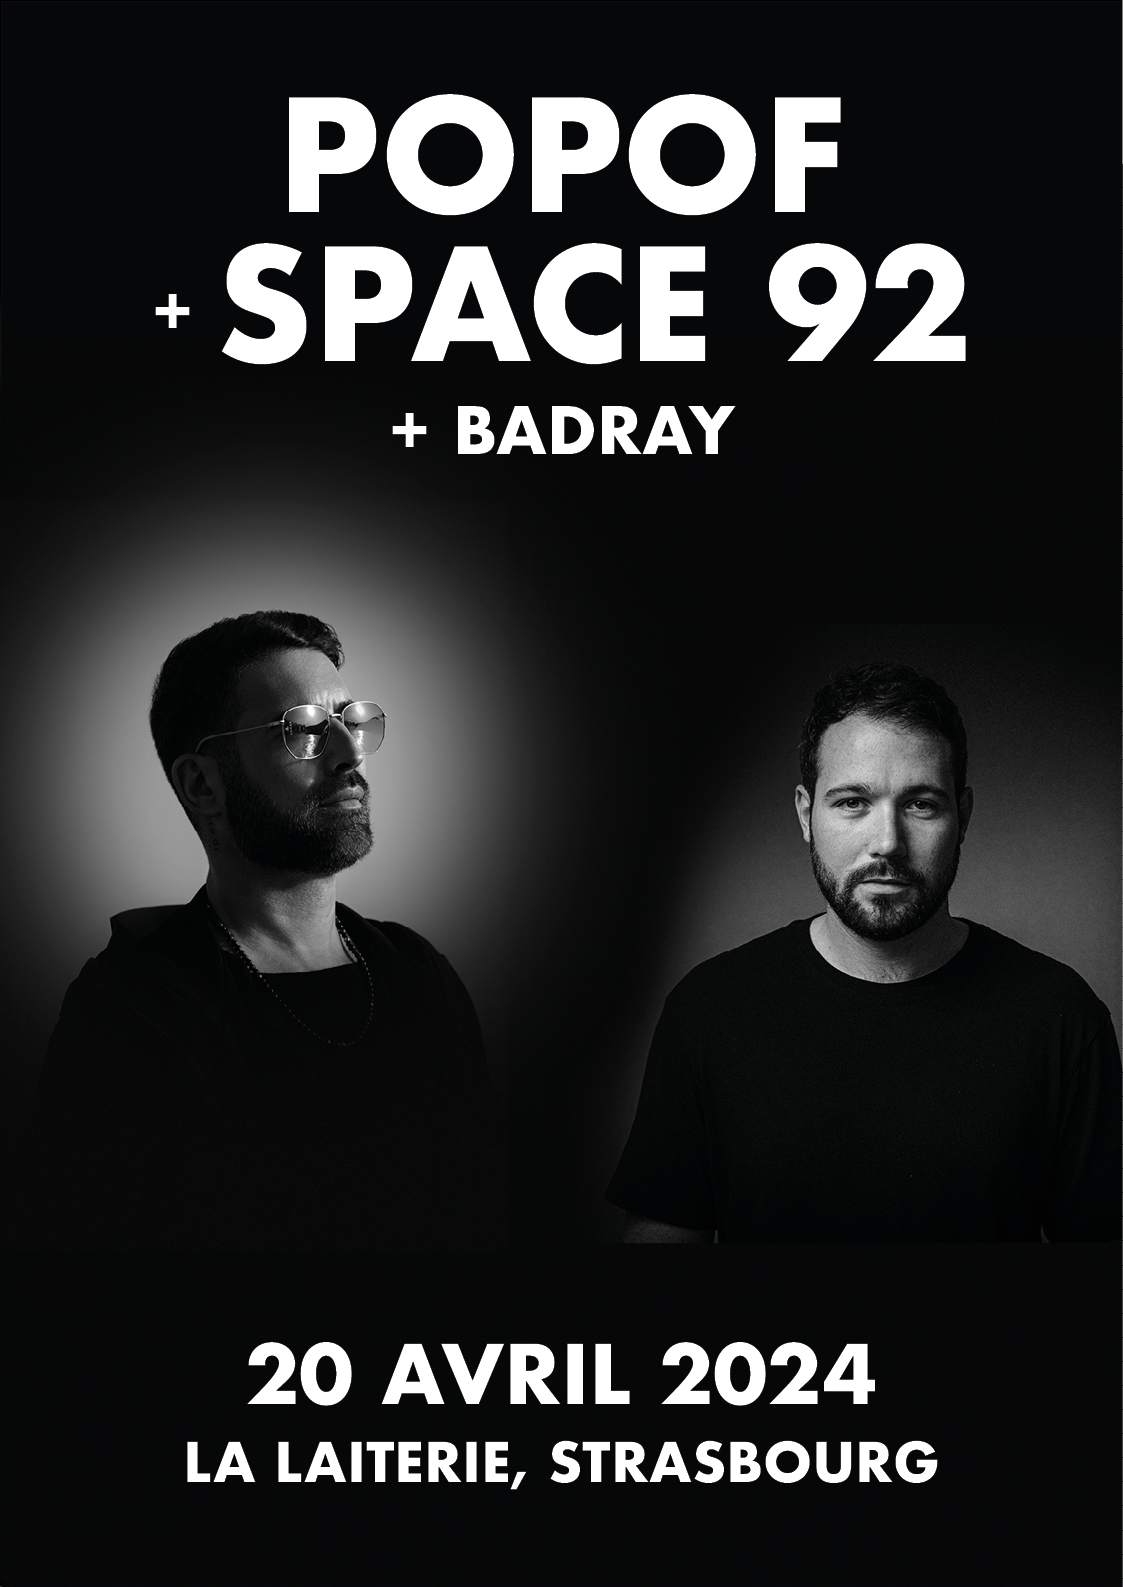 Popof + Space 92 + Badray - Página frontal